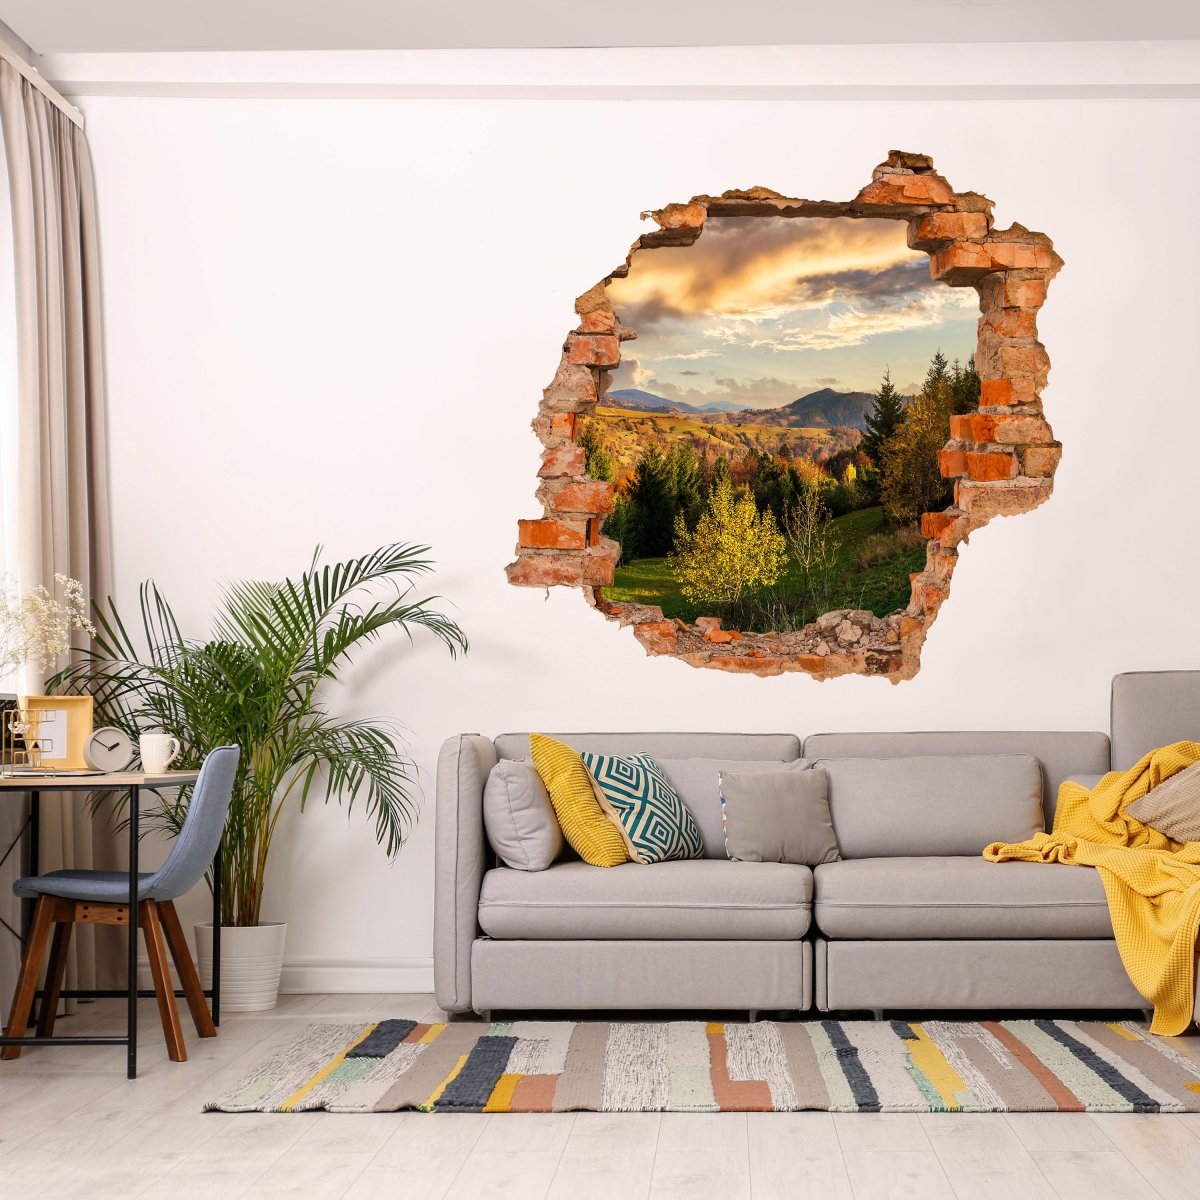 Sticker mural 3D pente de chaîne de montagnes avec forêt de conifères - Sticker mural M0908